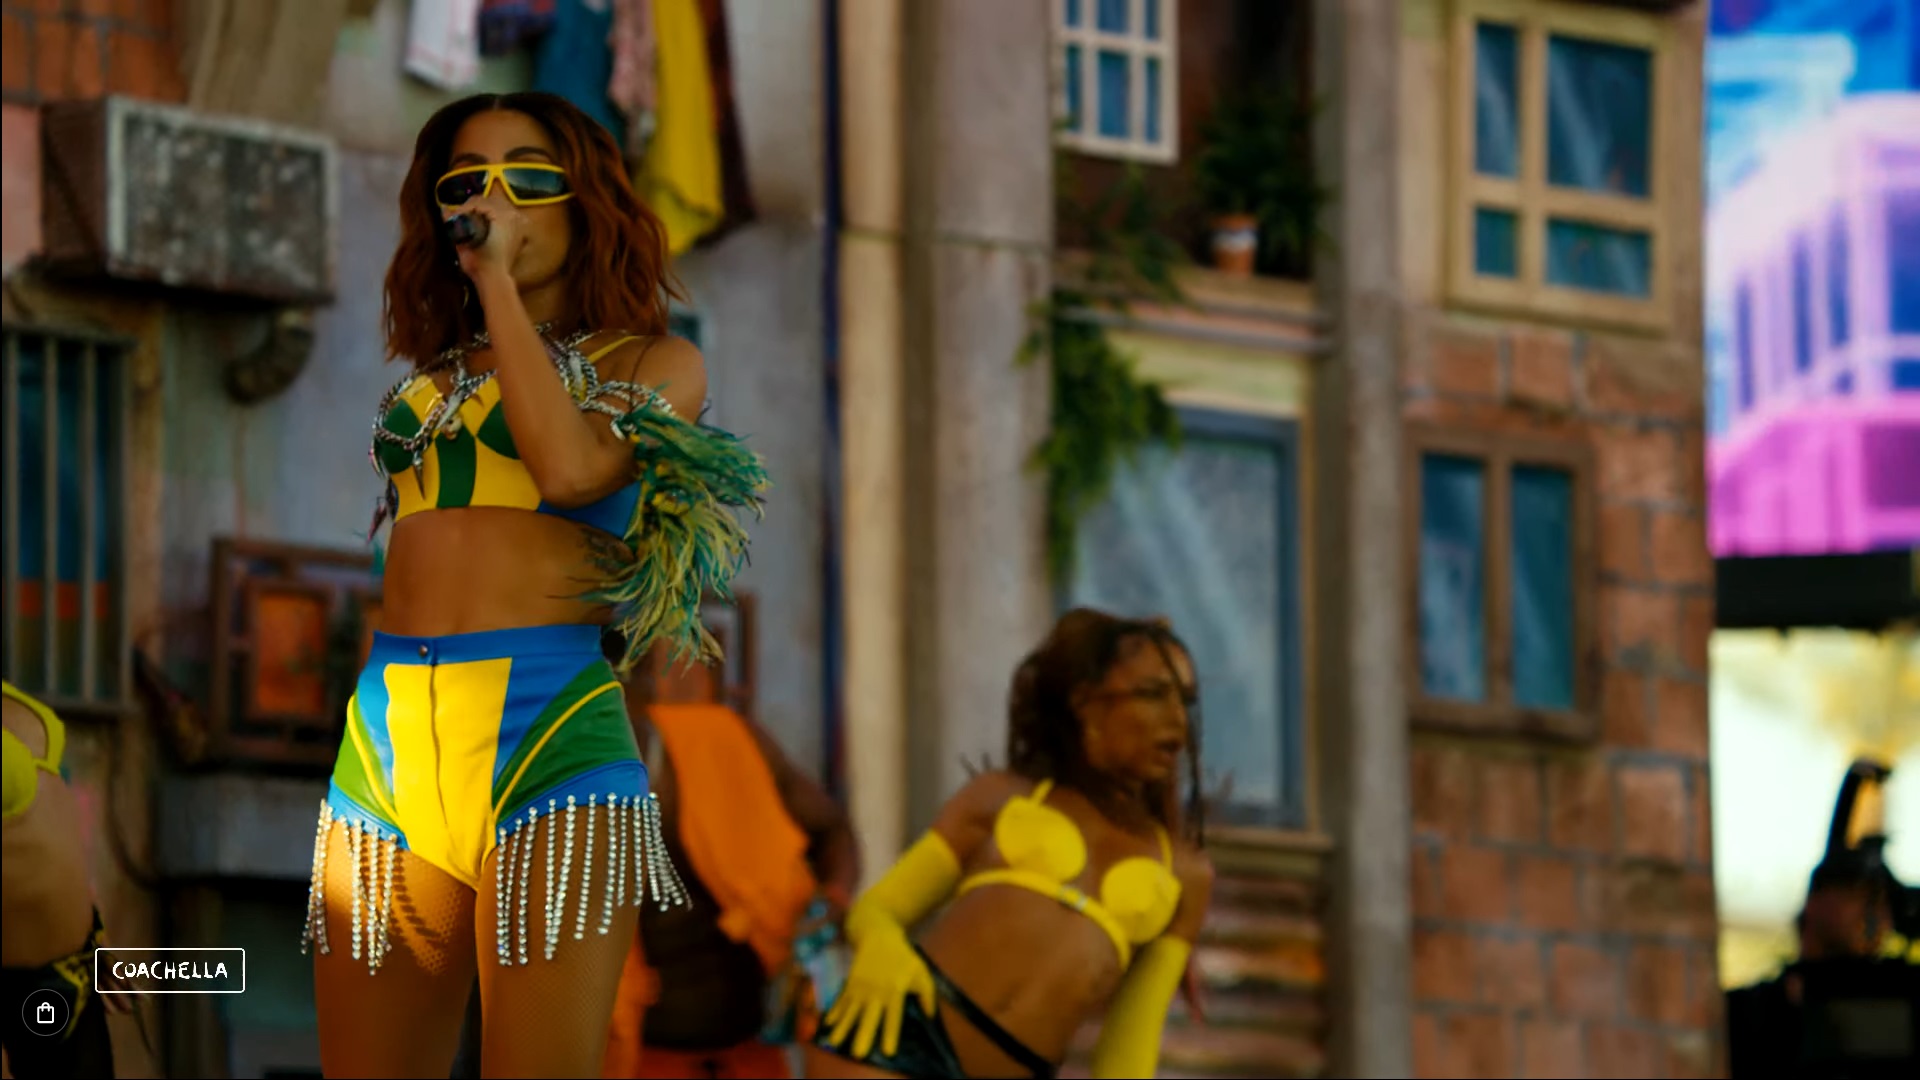 A cantora Anitta veste um top e shorts com as cores da bandeira do Brasil durante show no festival Coachella, na Califórnia